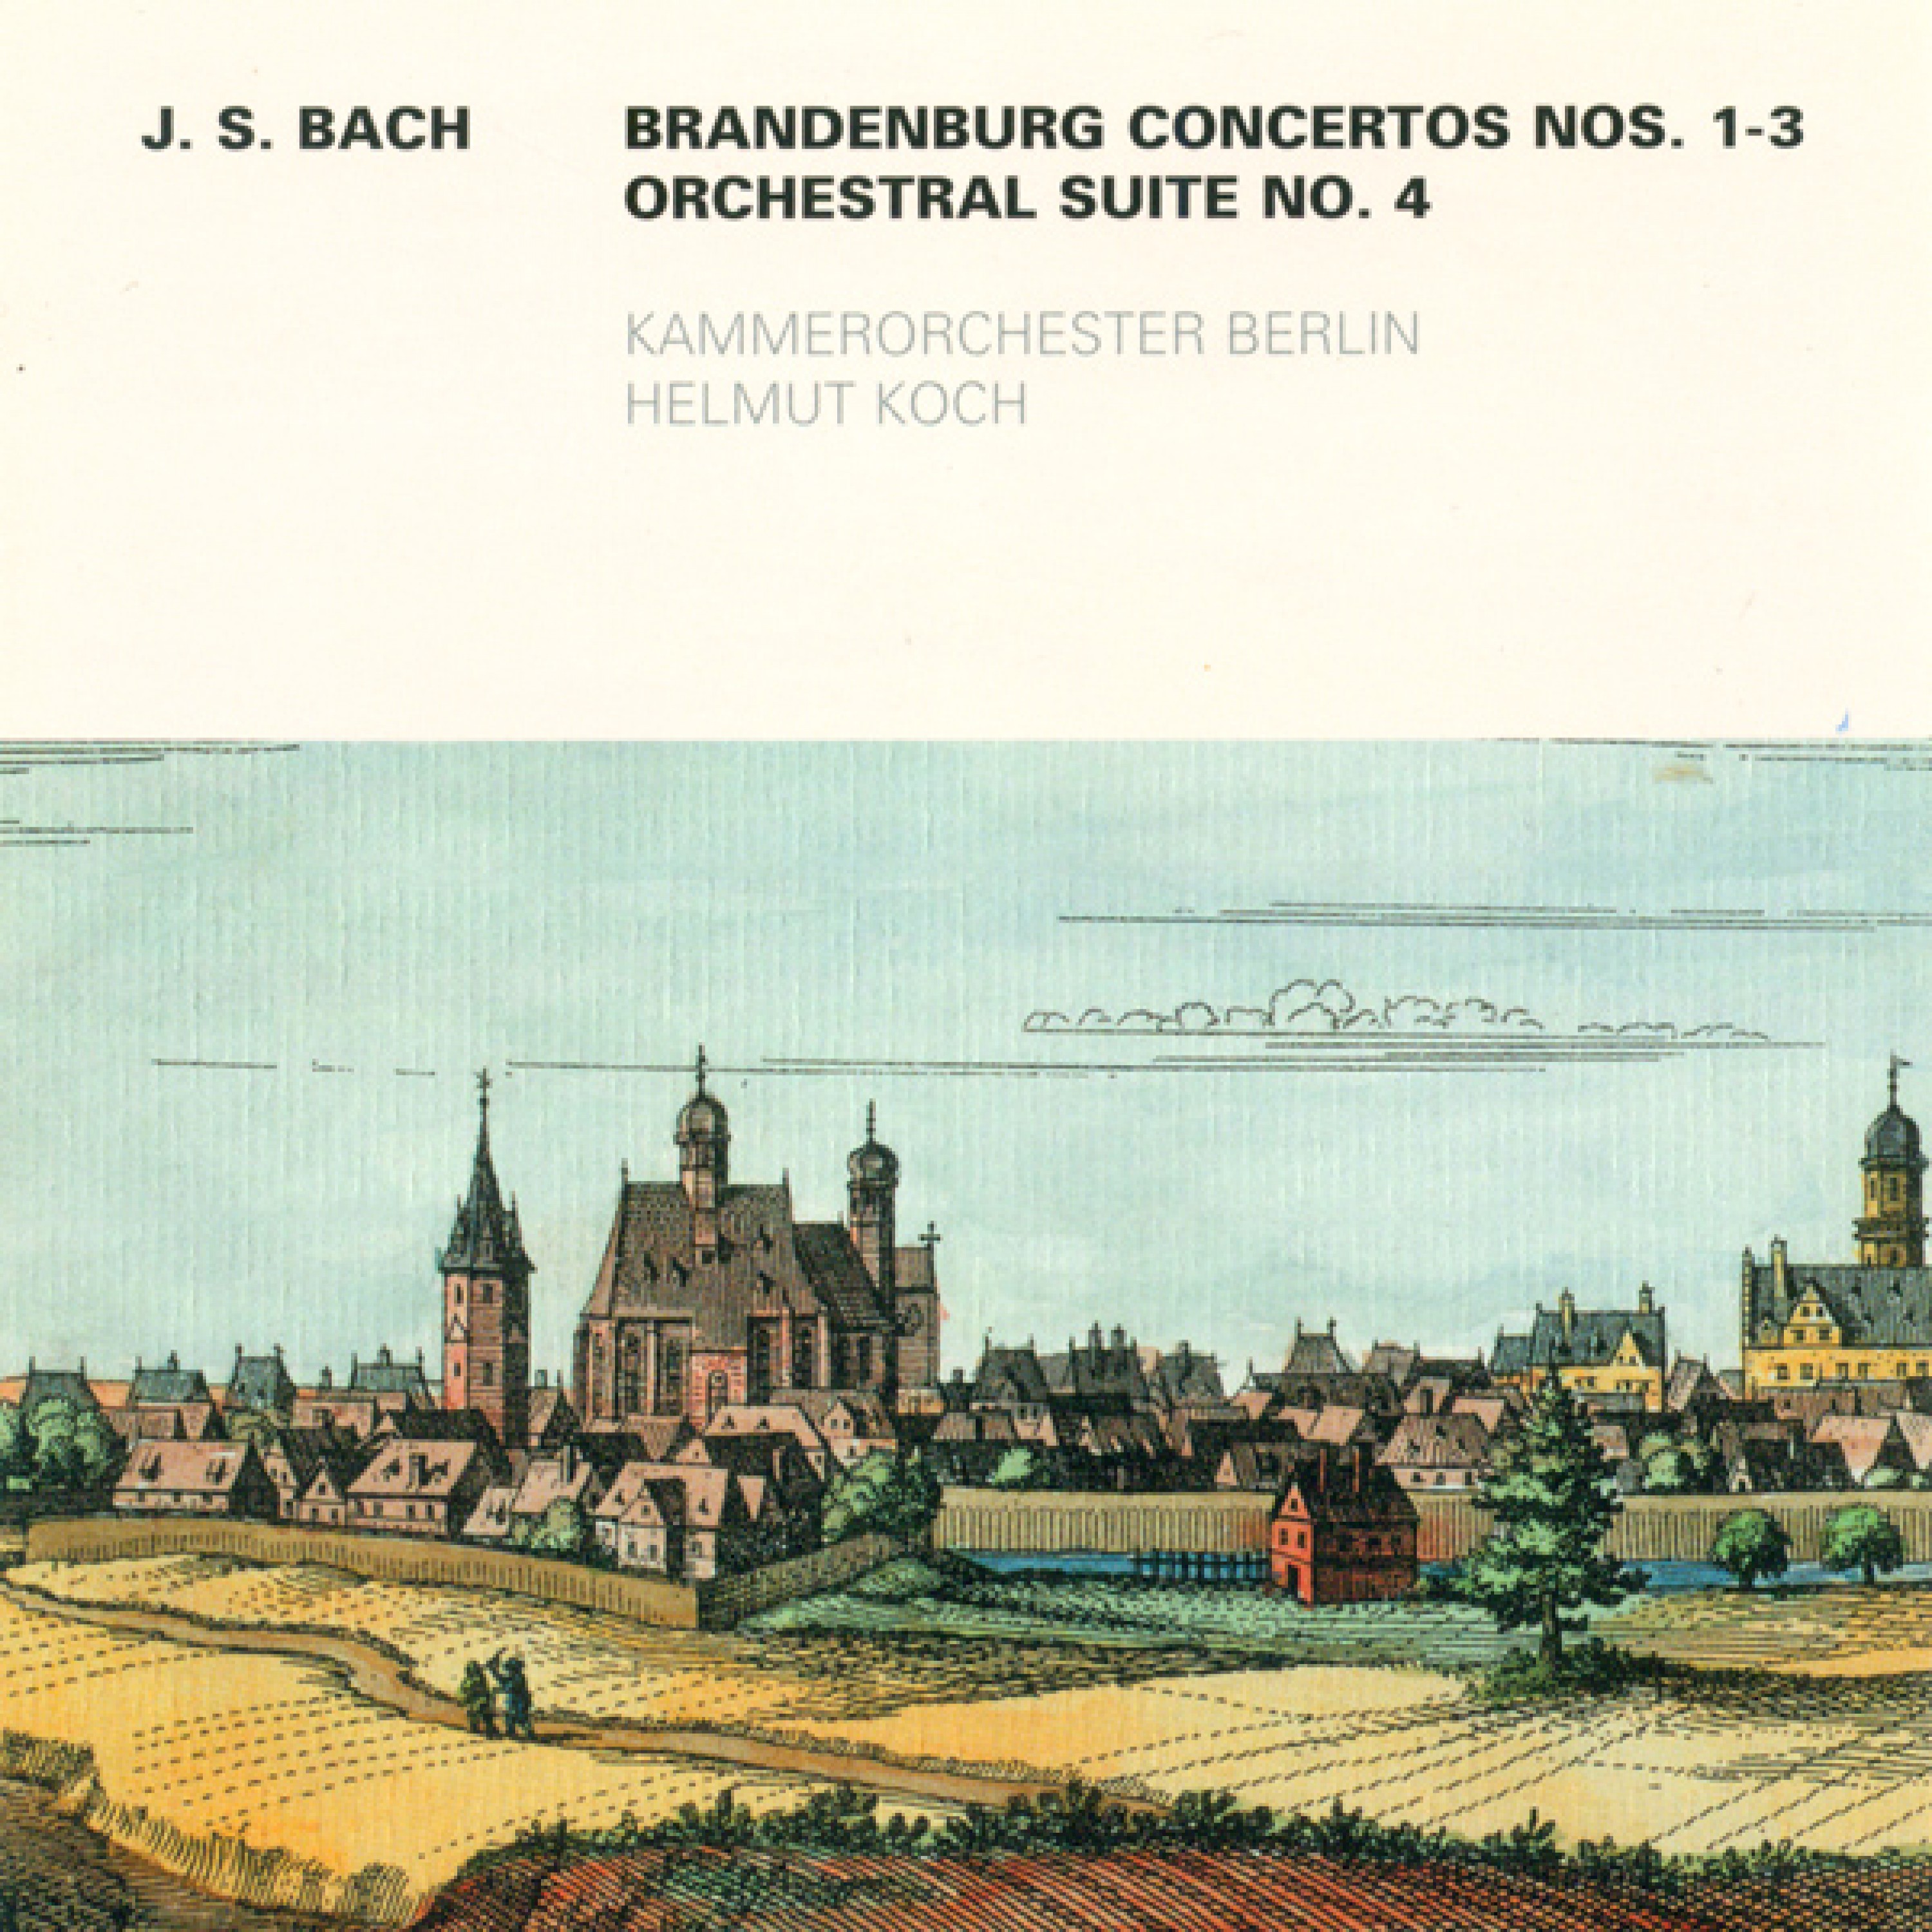 Brandenburg Concerto No. 2 in F major, BWV 1047: I. (Allegro)